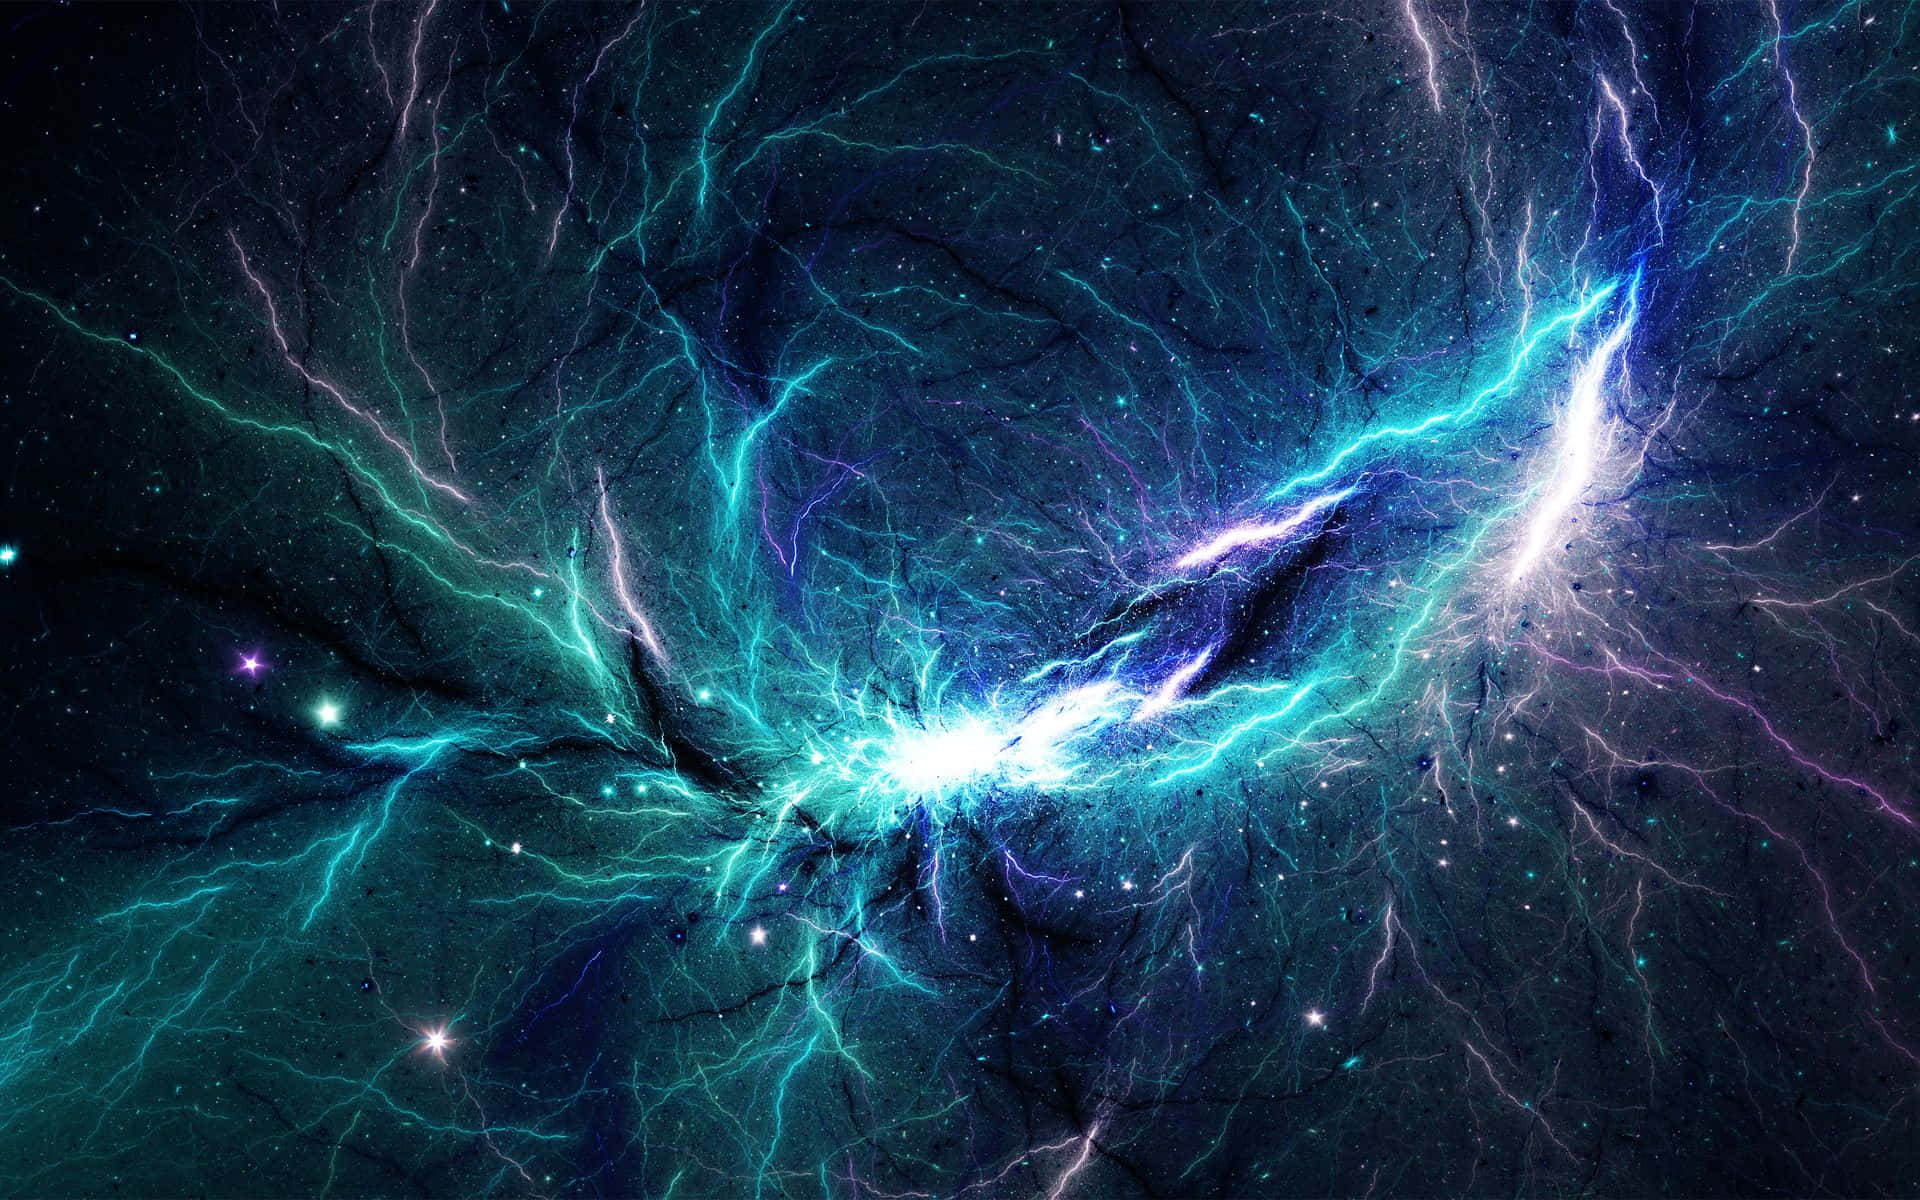 Maravilhaastronômica De Uma Nebulosa Espacial Papel de Parede